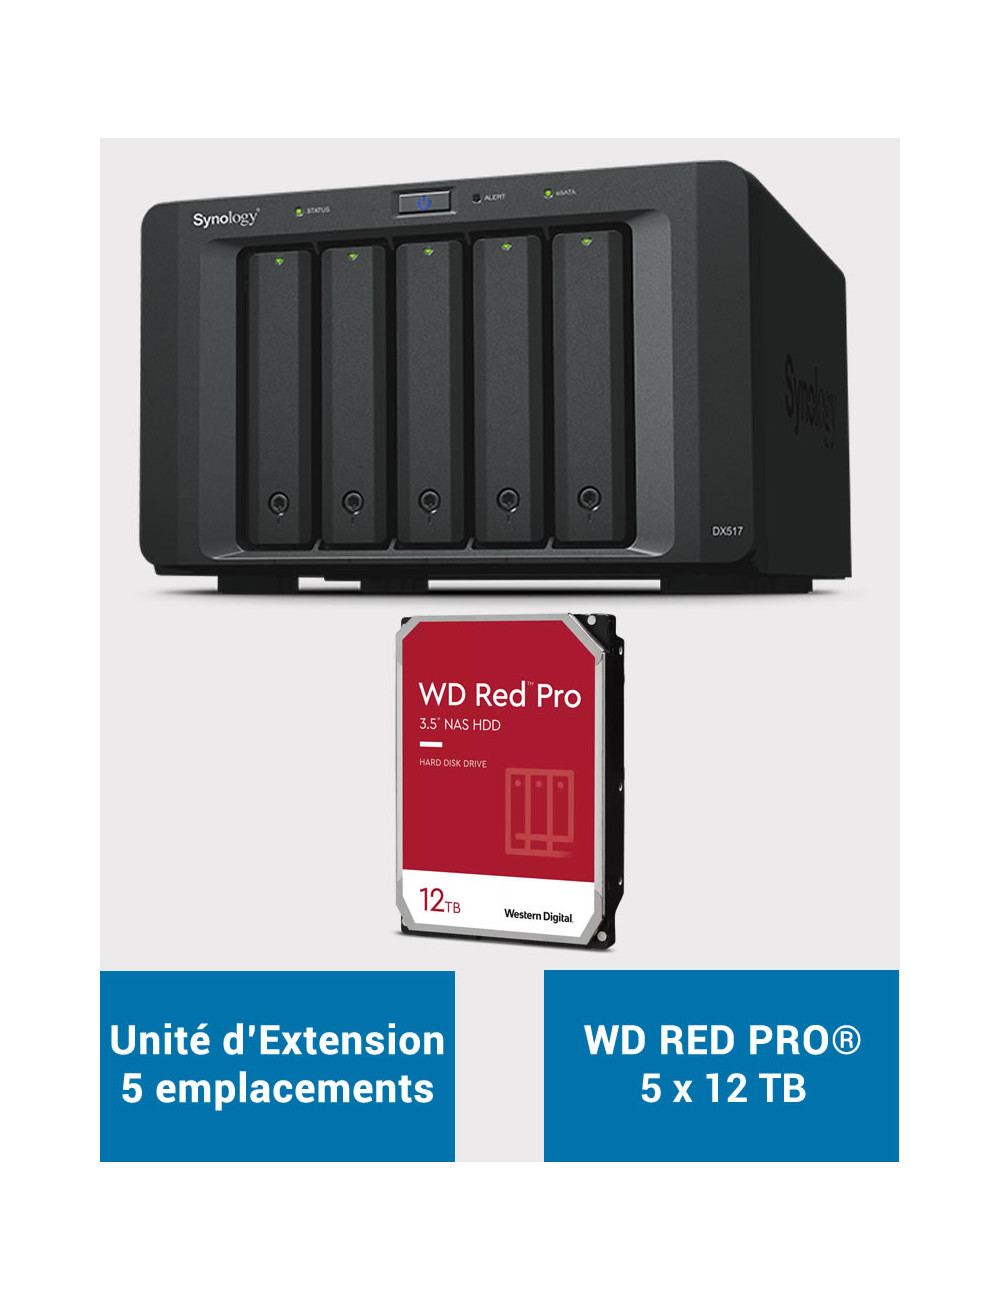 Synology DX517 Unidad de expansión WD RED PRO 60TB (5x12TB)